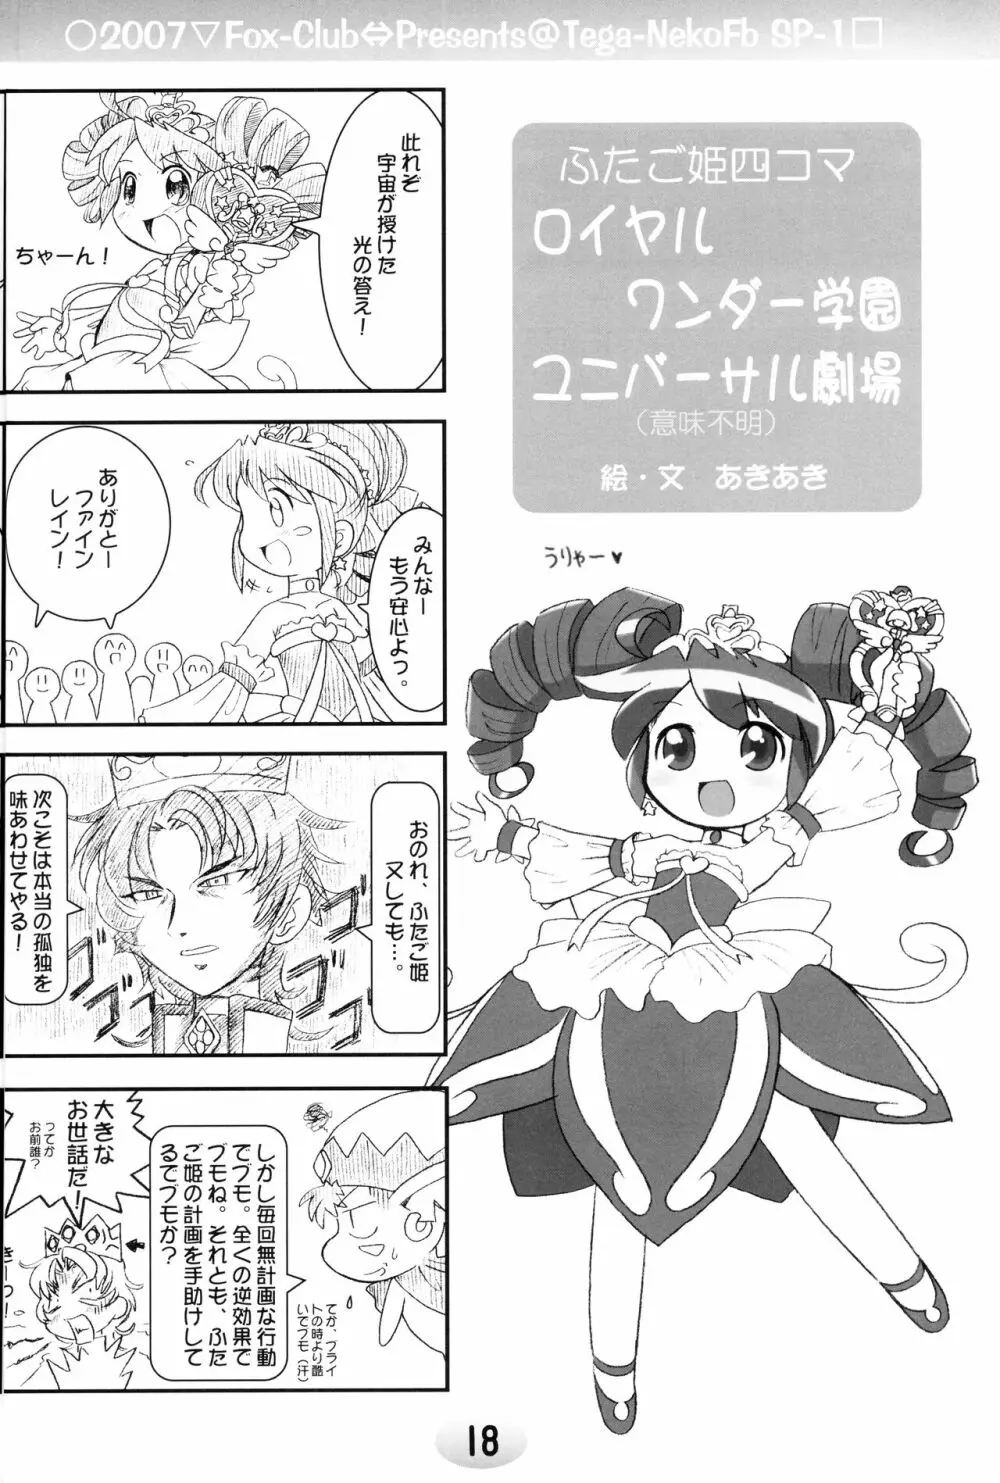 TeGa‐NeKo Fb/SP ふたご姫 ぷらす 16ページ